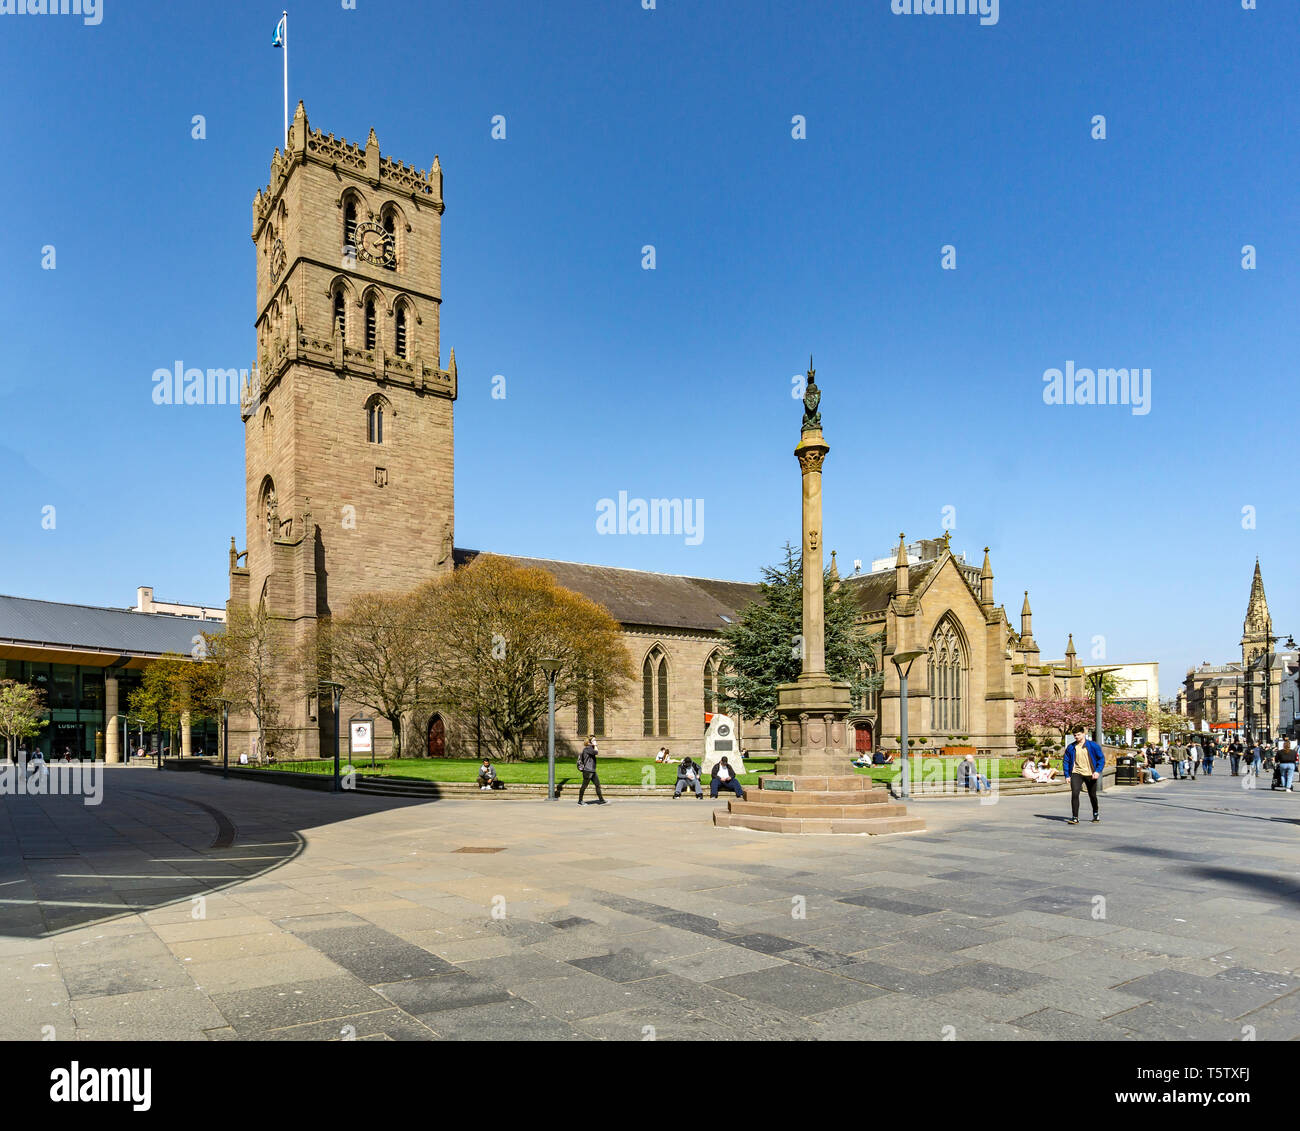 L'Église avec clocher église St Marys Nethergate Dundee en Ecosse Tayside UK avec la vieille ville Cross/ Banque D'Images